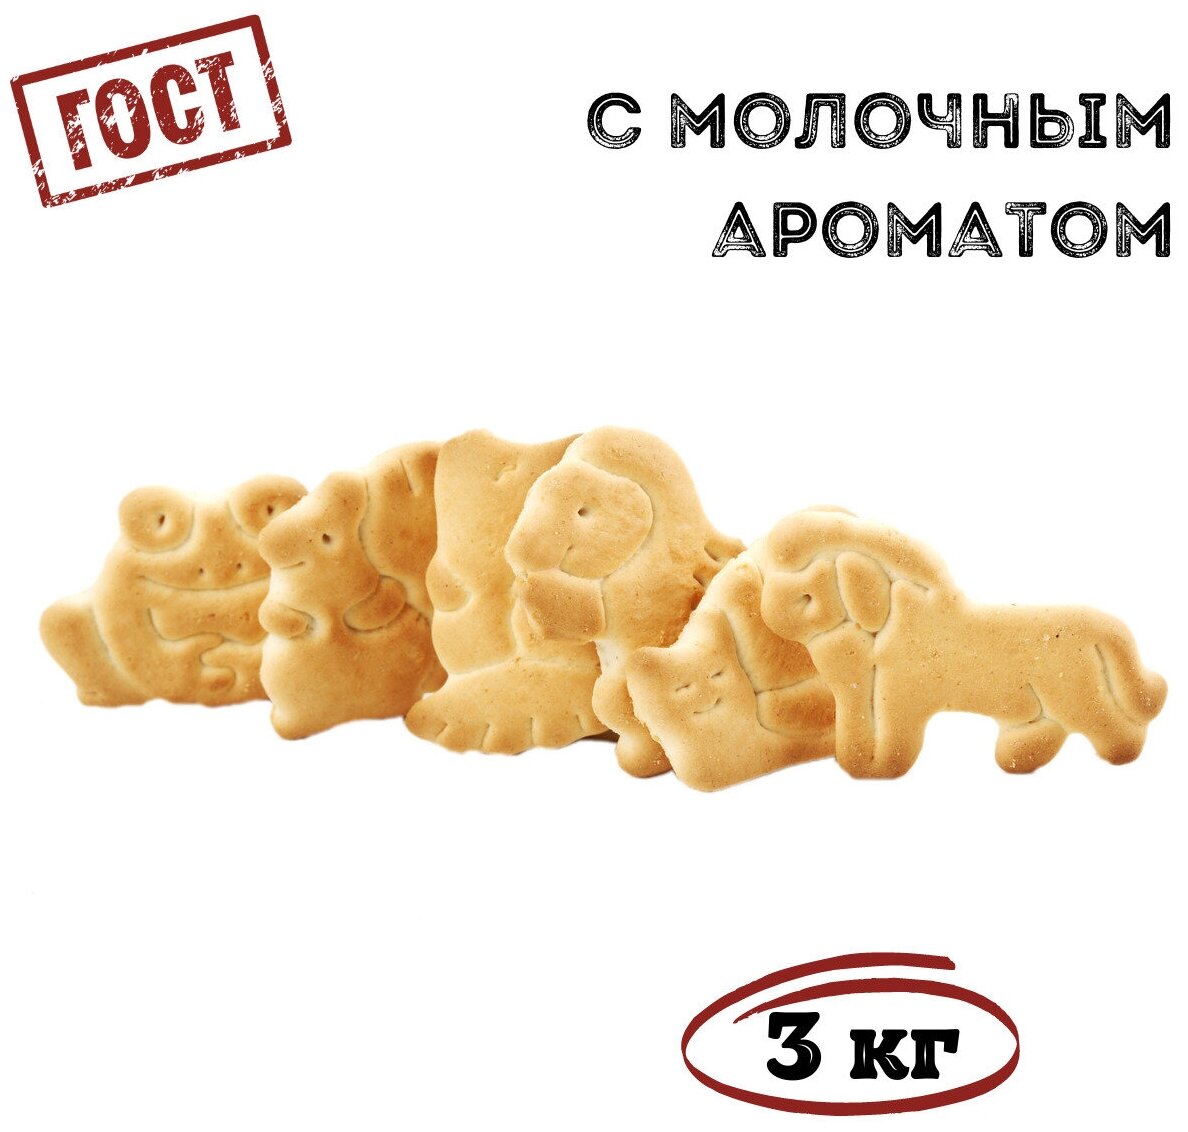 Печенье затяжное зоокидс, 3 кг / Томский Кондитер